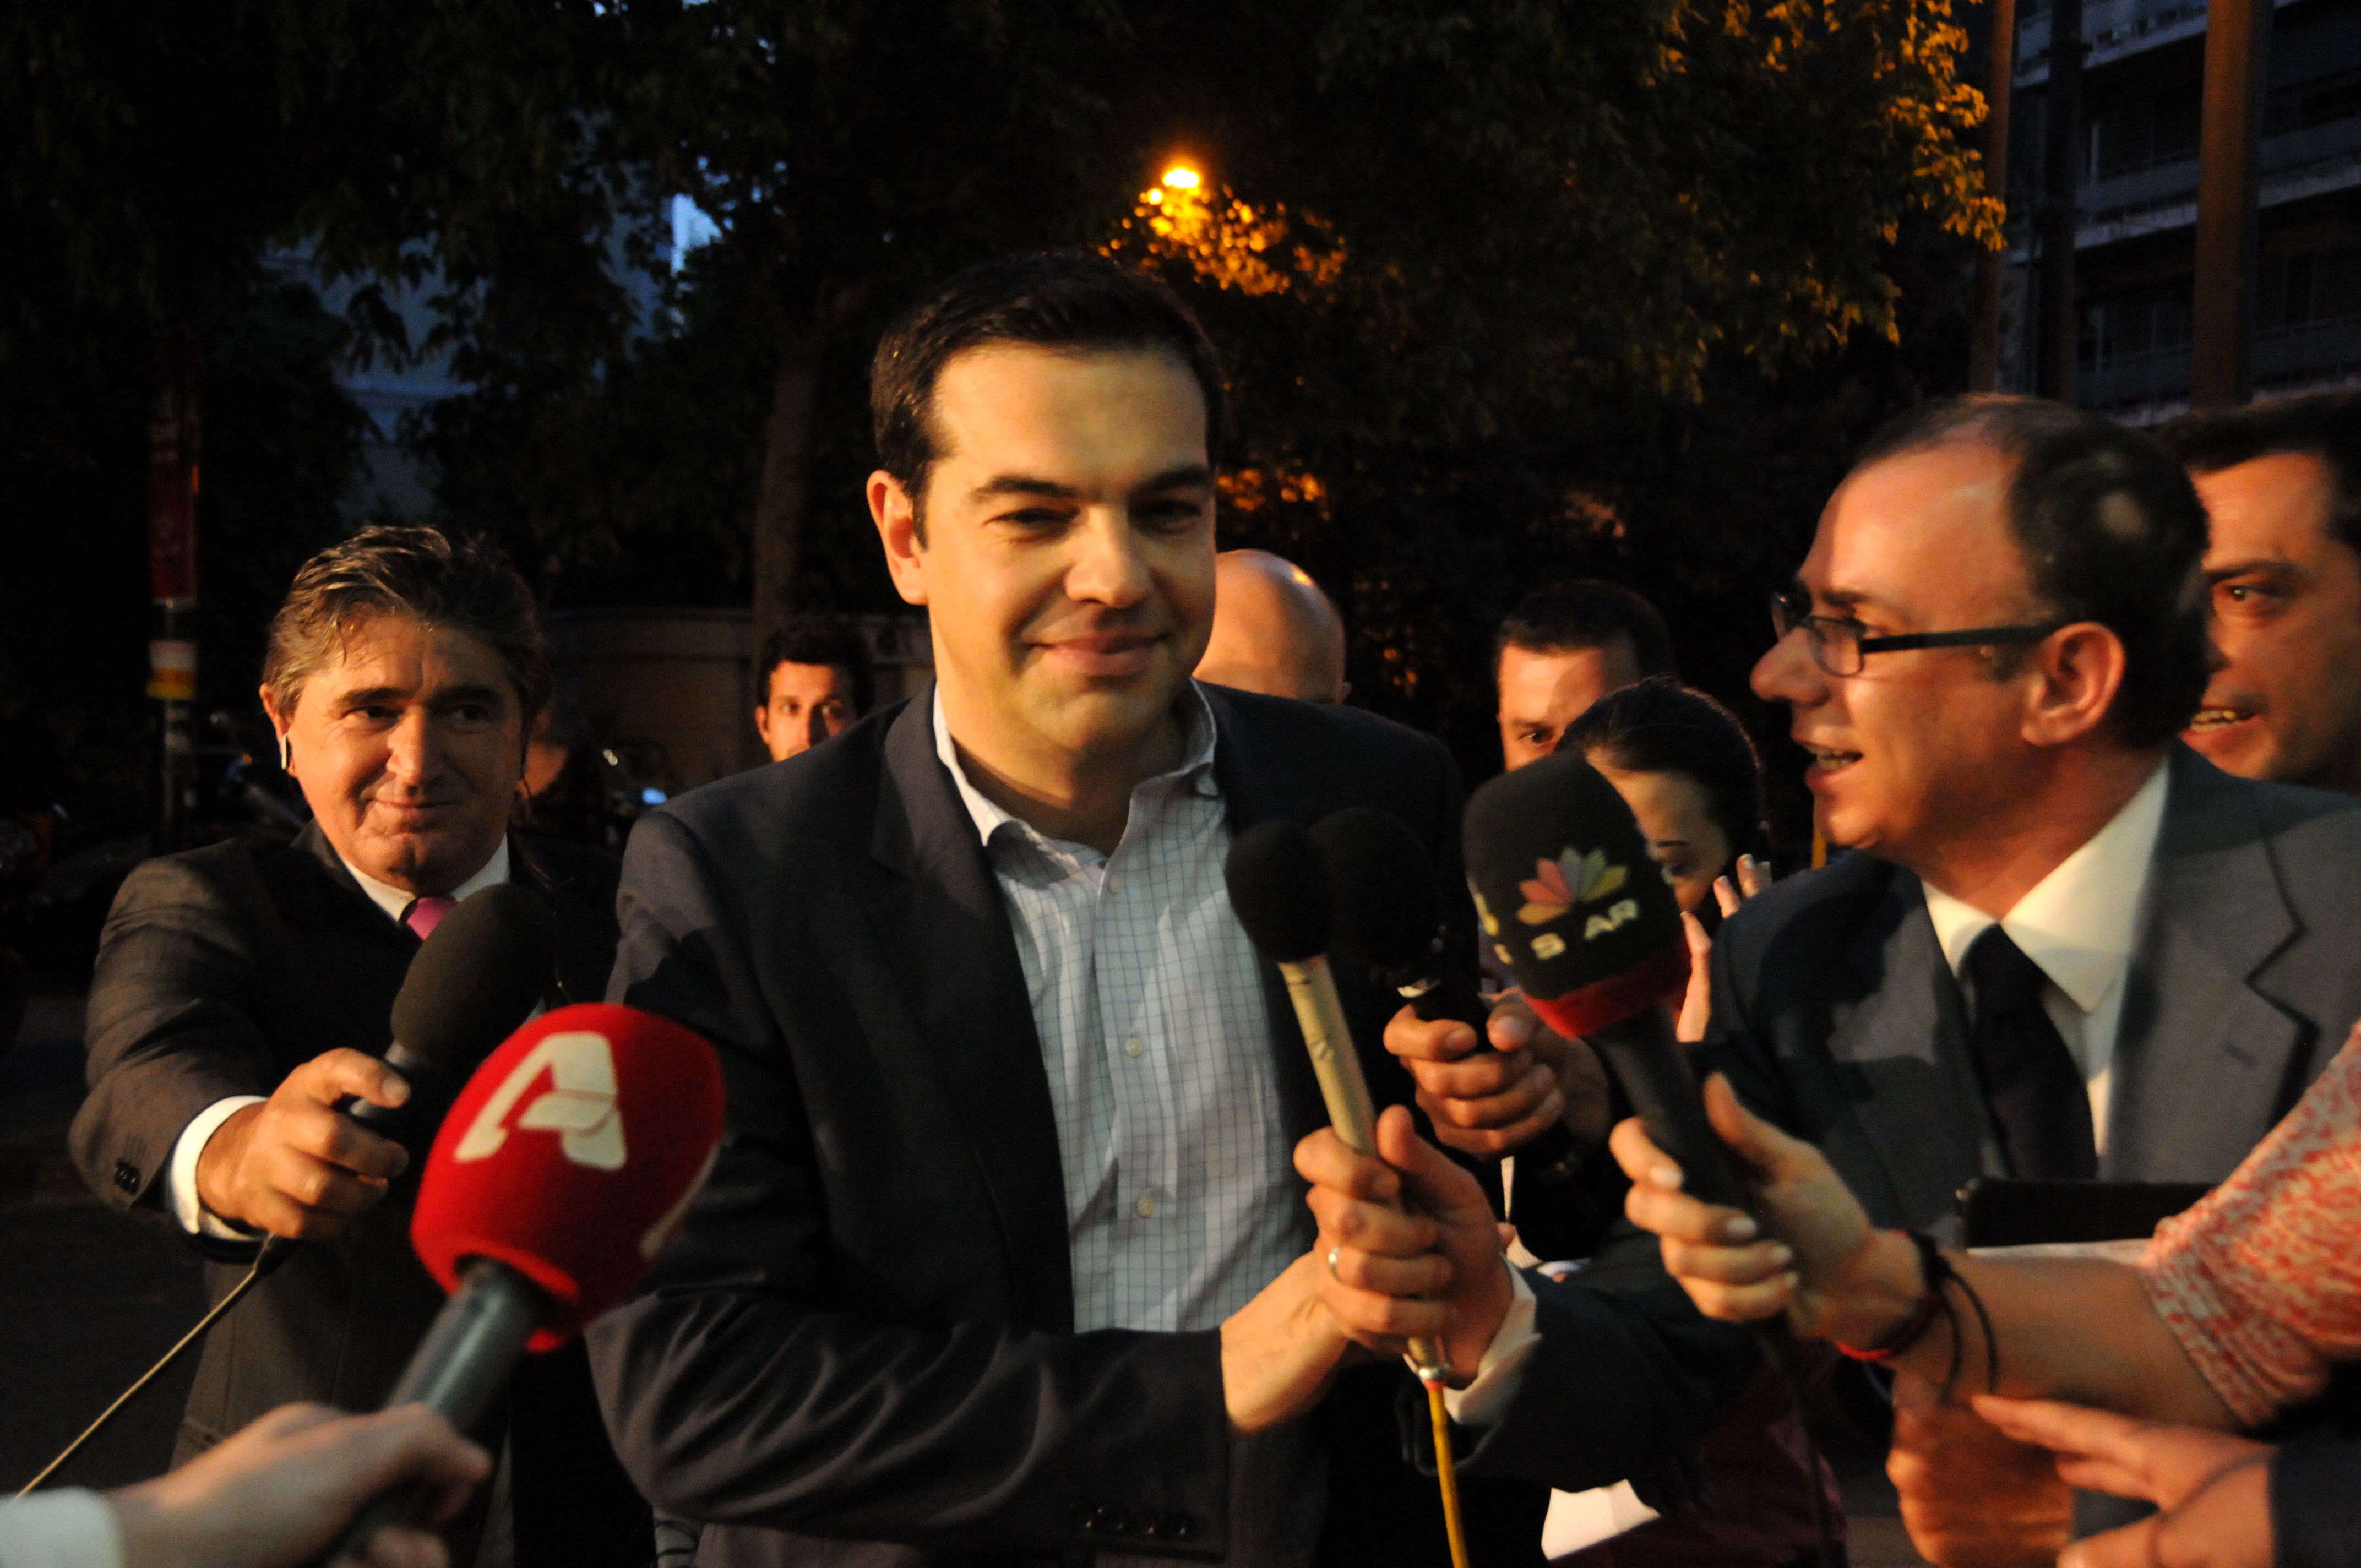 Πρόωρες εκλογές ζήτησε ο Α. Τσίπρας! “Εάν είχαμε εθνικές εκλογές ο ΣΥΡΙΖΑ θα είχε 130 έδρες